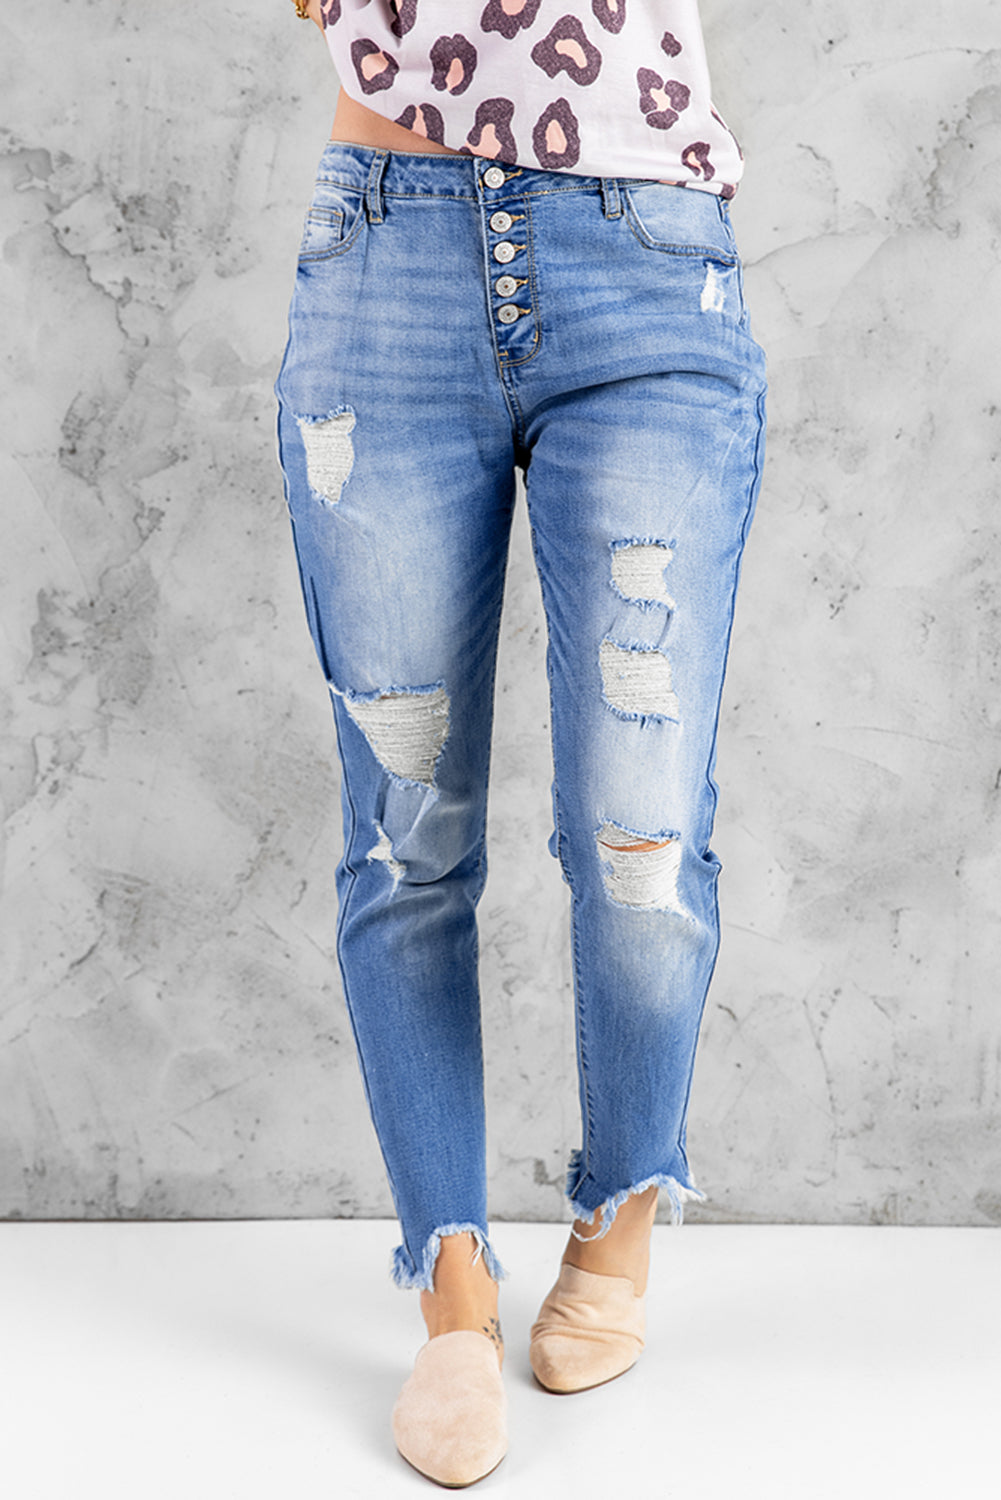 Himmelblaue Skinny-Jeans mit hohem Bund und Knopfleiste vorne und ausgefransten Knöcheln